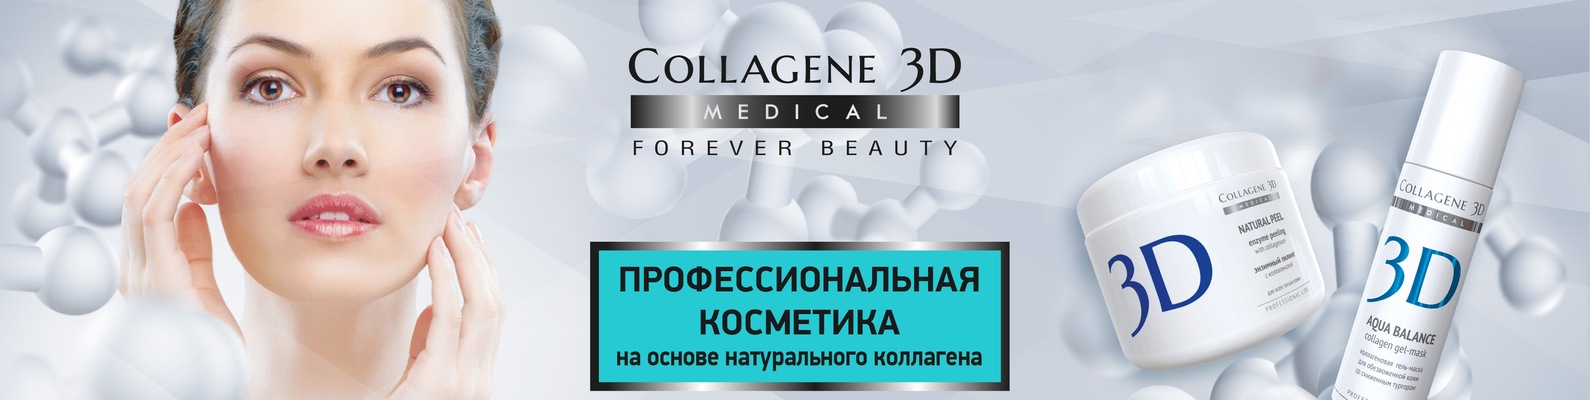 Коллаген и д3. 3d Collagen косметика. Косметика Медикал коллаген 3д. Профессиональная косметика 3д коллаген Медикал набор. Профессиональная косметика для лица для косметологов.